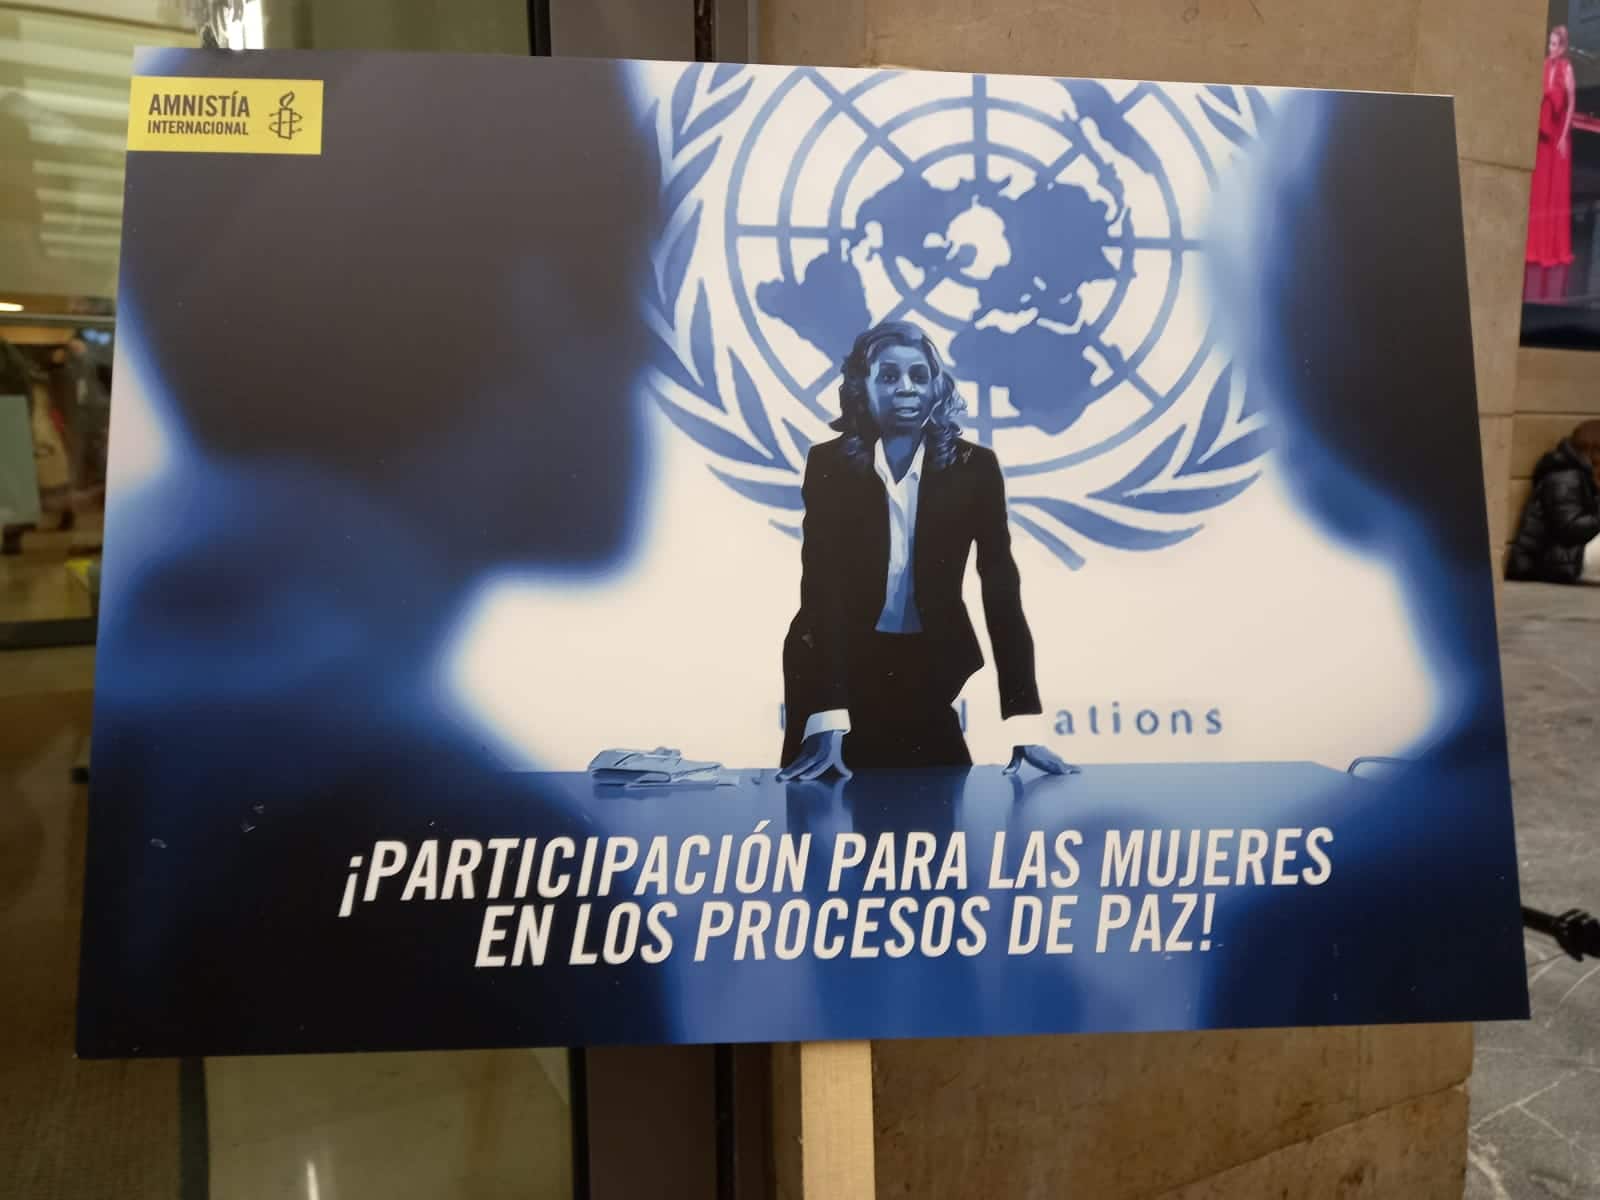 AI7 - Amnistía Internacional pide en San Sebastián más protección para las mujeres en las guerras